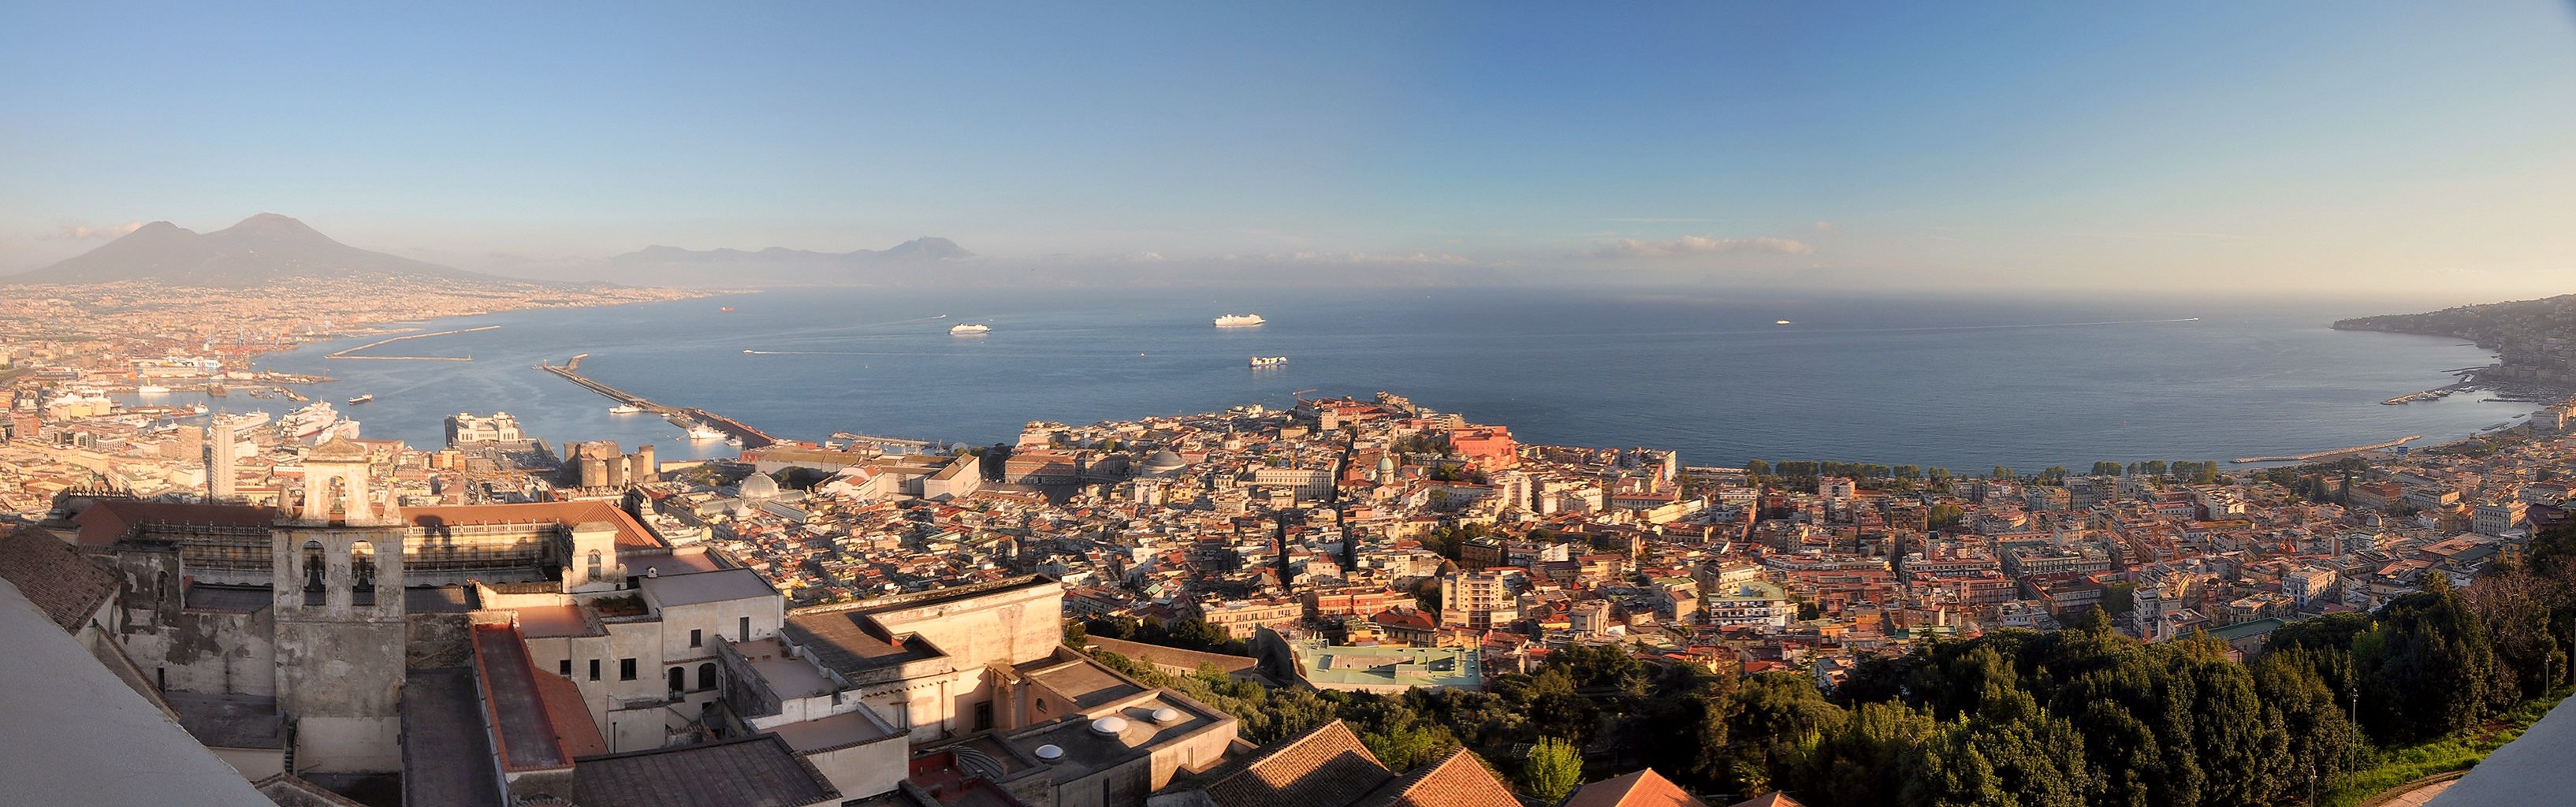  |Blick vom Castel Sant’Elmo nach Westen über den Golf von Neapel